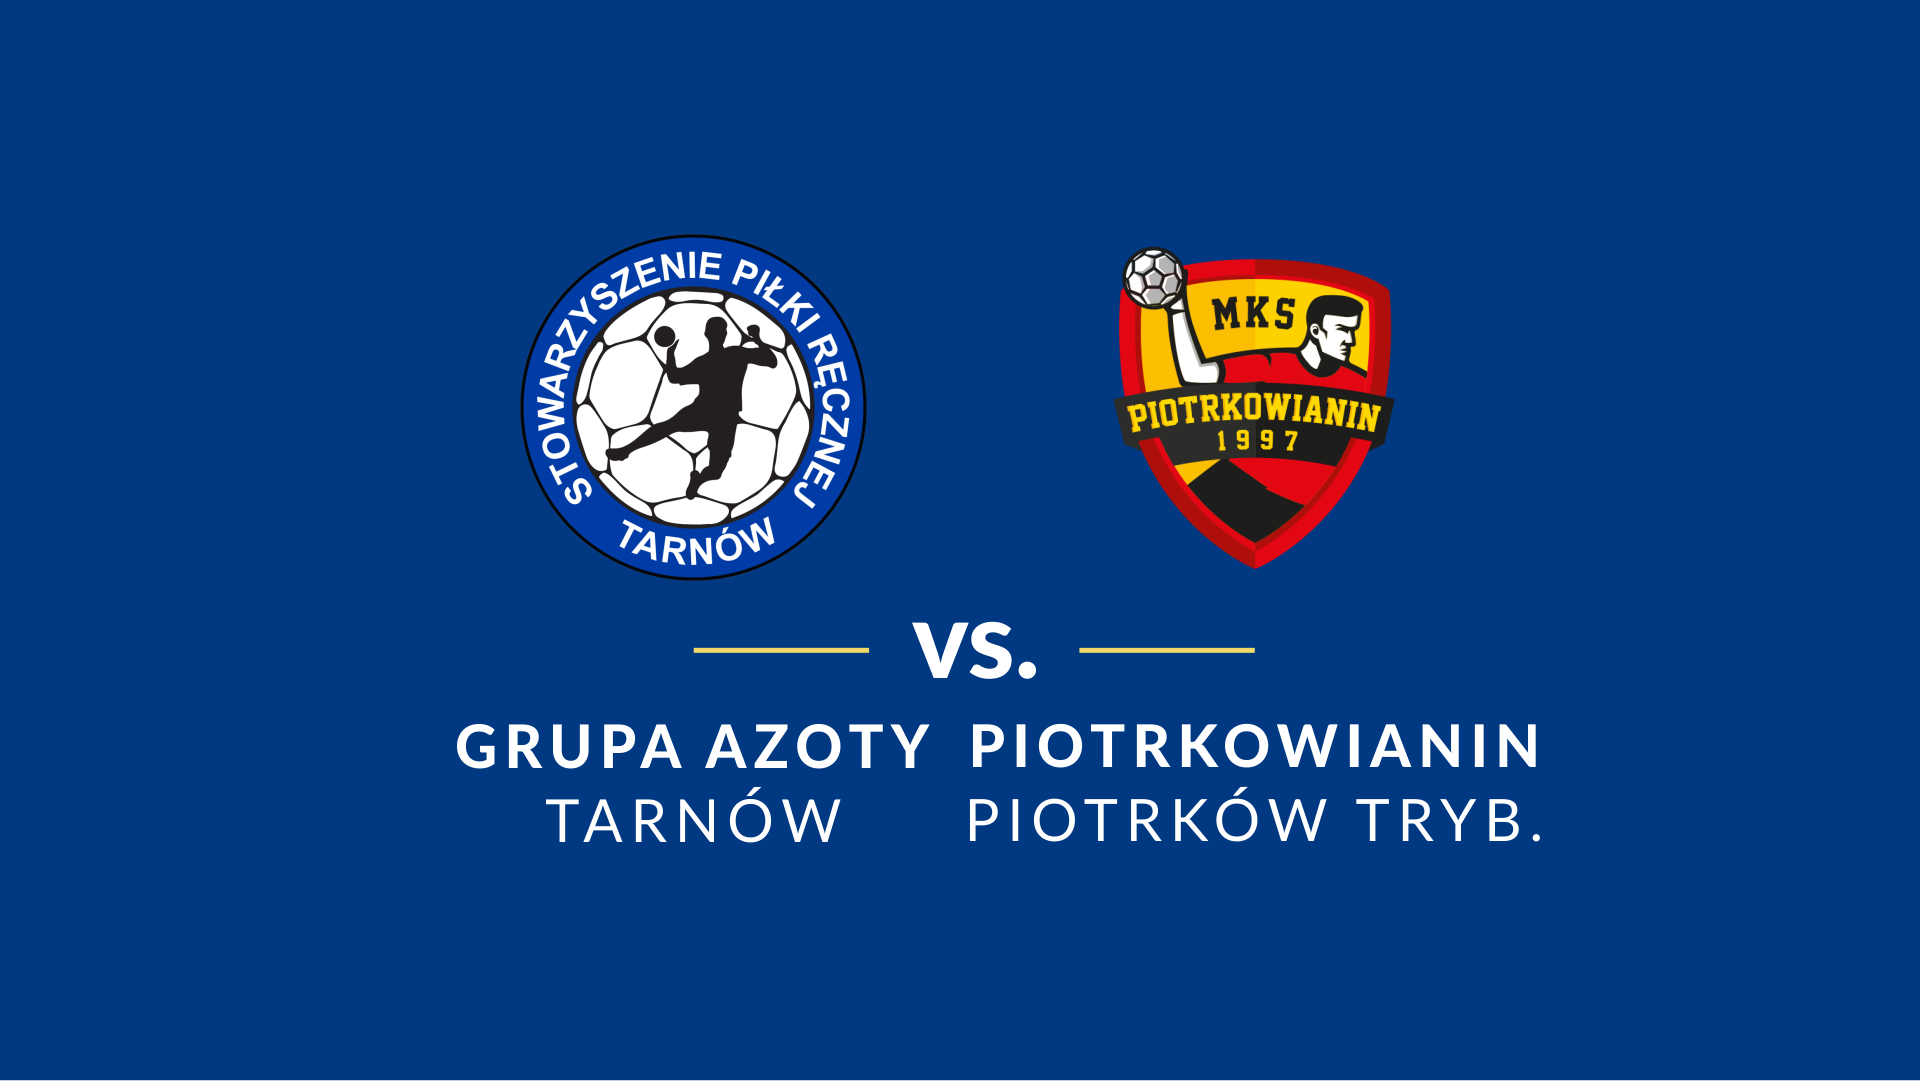 baner - logotypy Grupa Azoty Tarnów i Piotrkowianin Piotrków Trybunalski